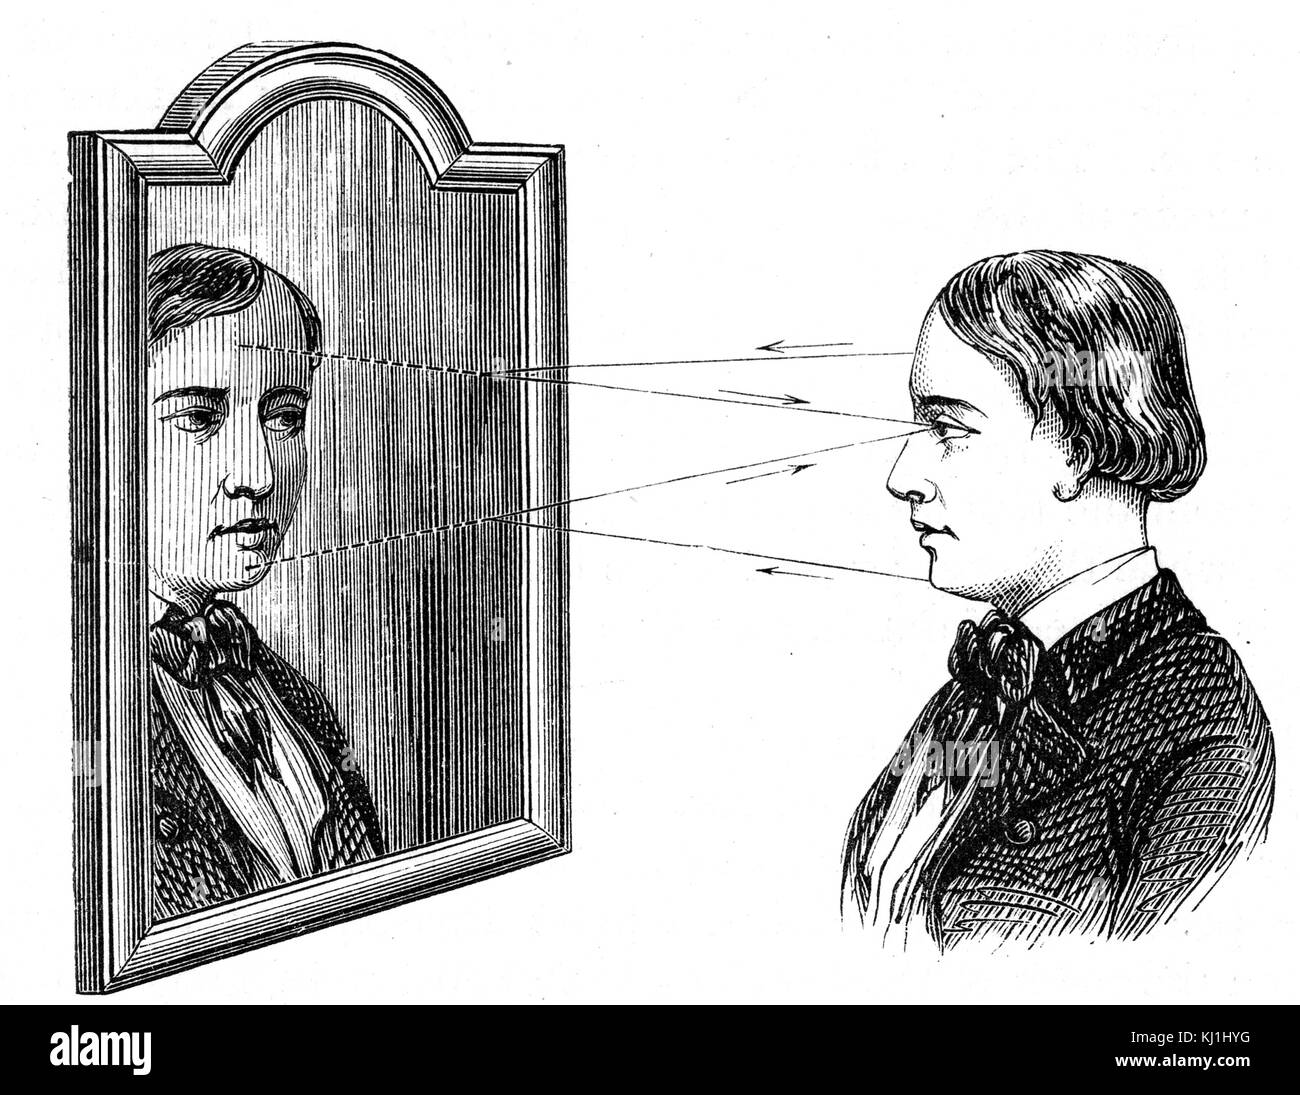 Kupferstich mit der Darstellung der Reflexion eines Objekts in einer Ebene, die Spiegel, die zeigen, wie der Einfallswinkel gleich Ausfallswinkel. Vom 19. Jahrhundert Stockfoto